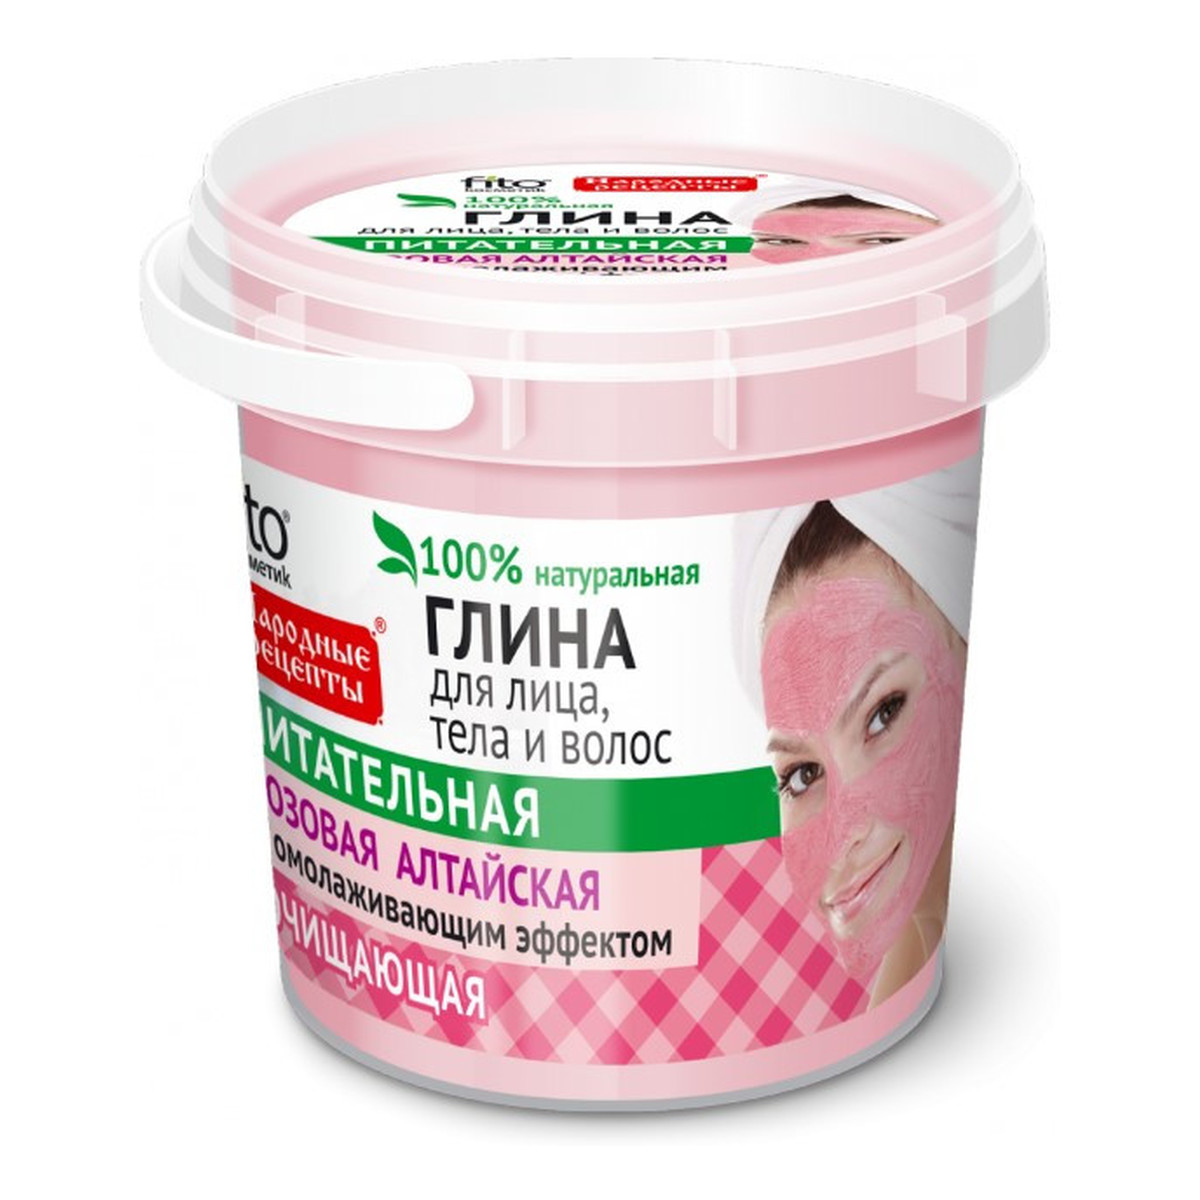 Fitokosmetik Różowa ałtajska glinka oczyszczająca do twarzy, ciała i włosów 155ml